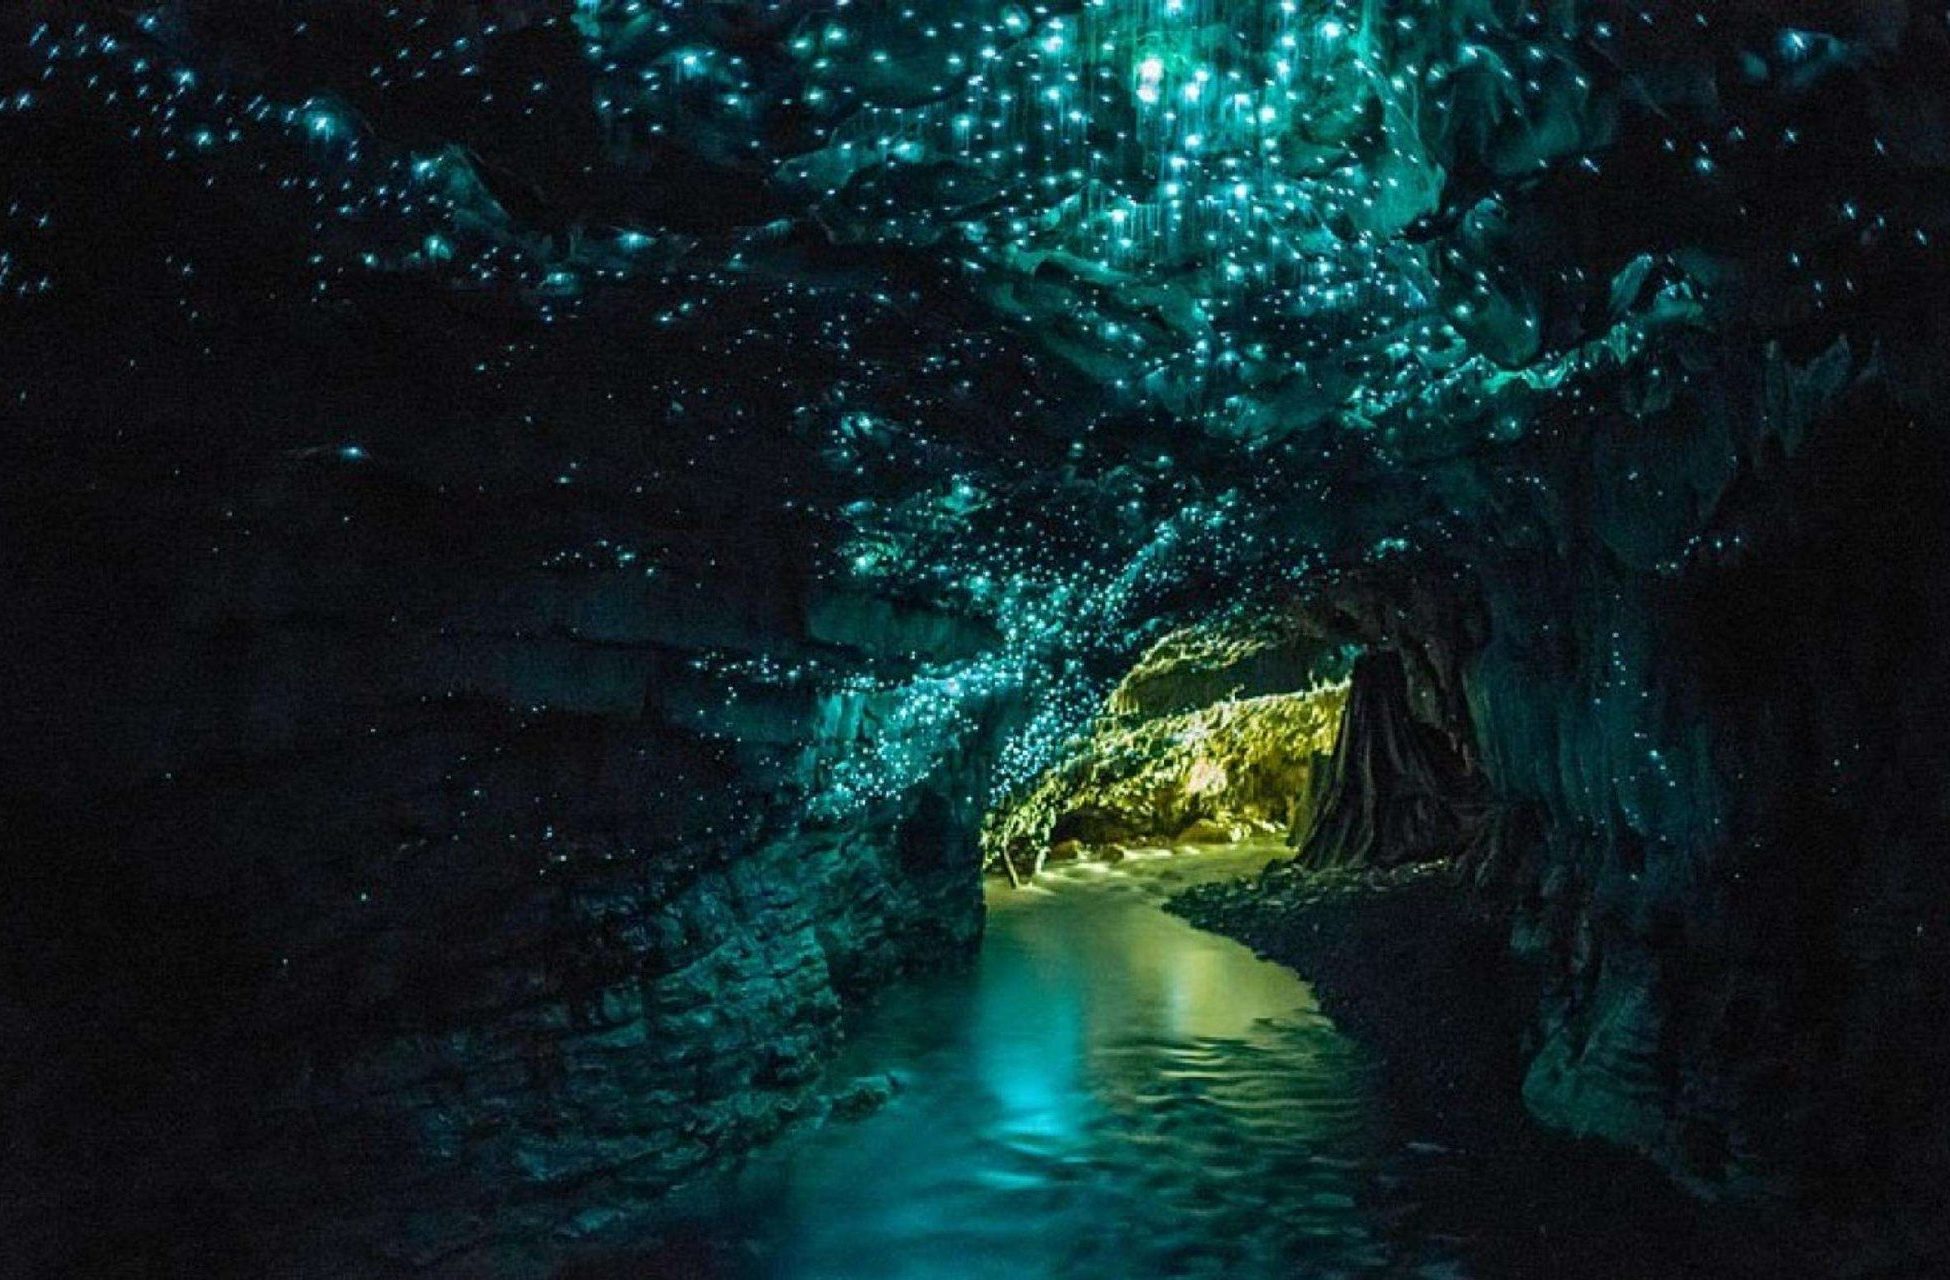 Jaskinia Waitomo Glowworm w Nowej Zelandii rozświetlona przez miliony poczwarek muchówek, które emitują światło. fot. autor nieznany